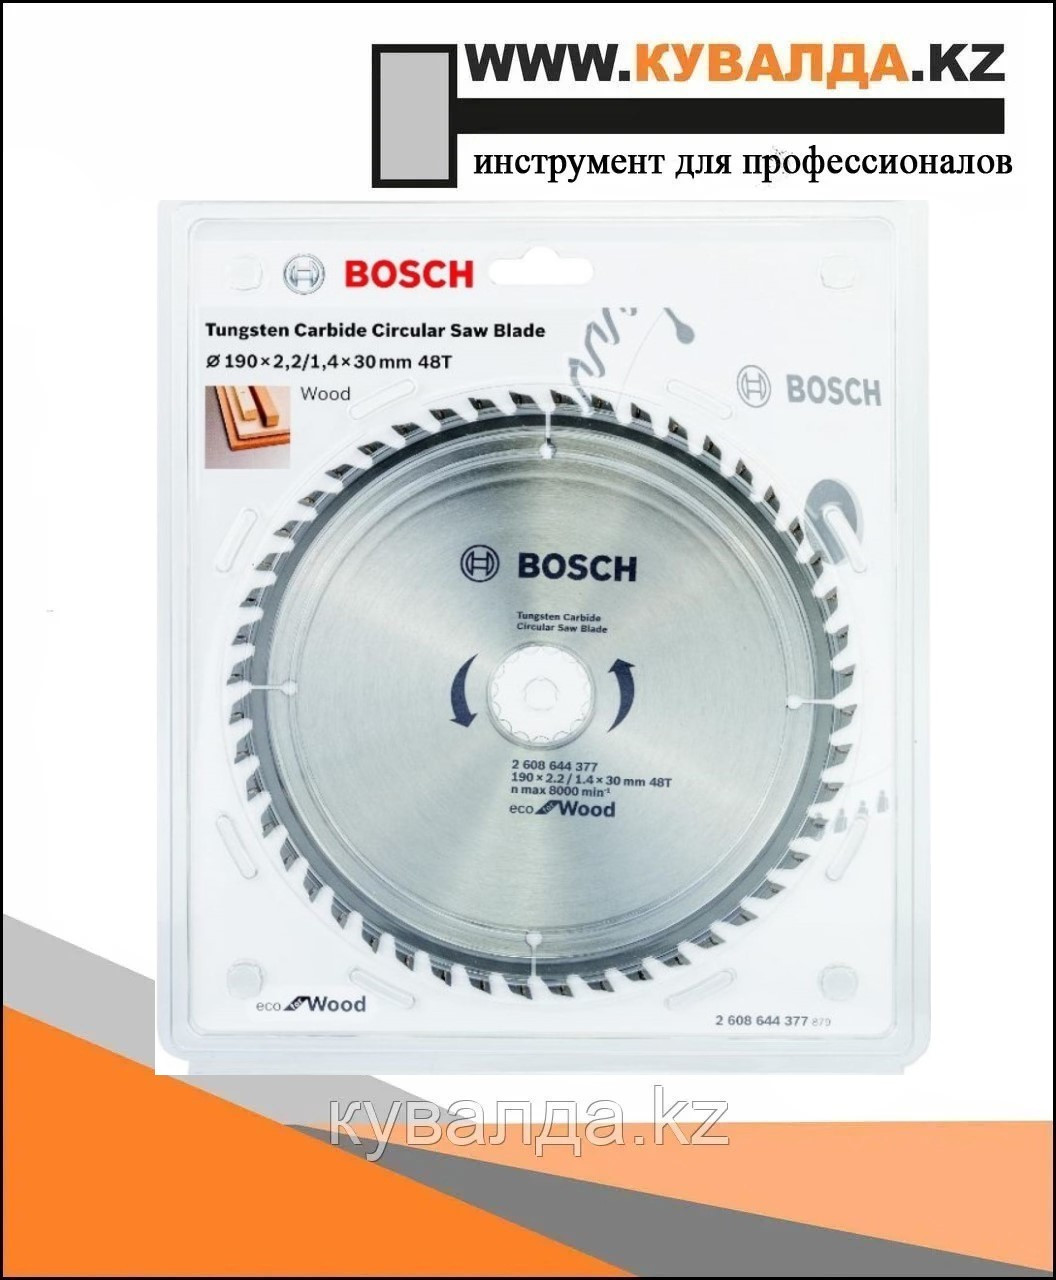 Bosch экономичный пильный диск по древесине для ручных циркулярных пил 190x30 мм